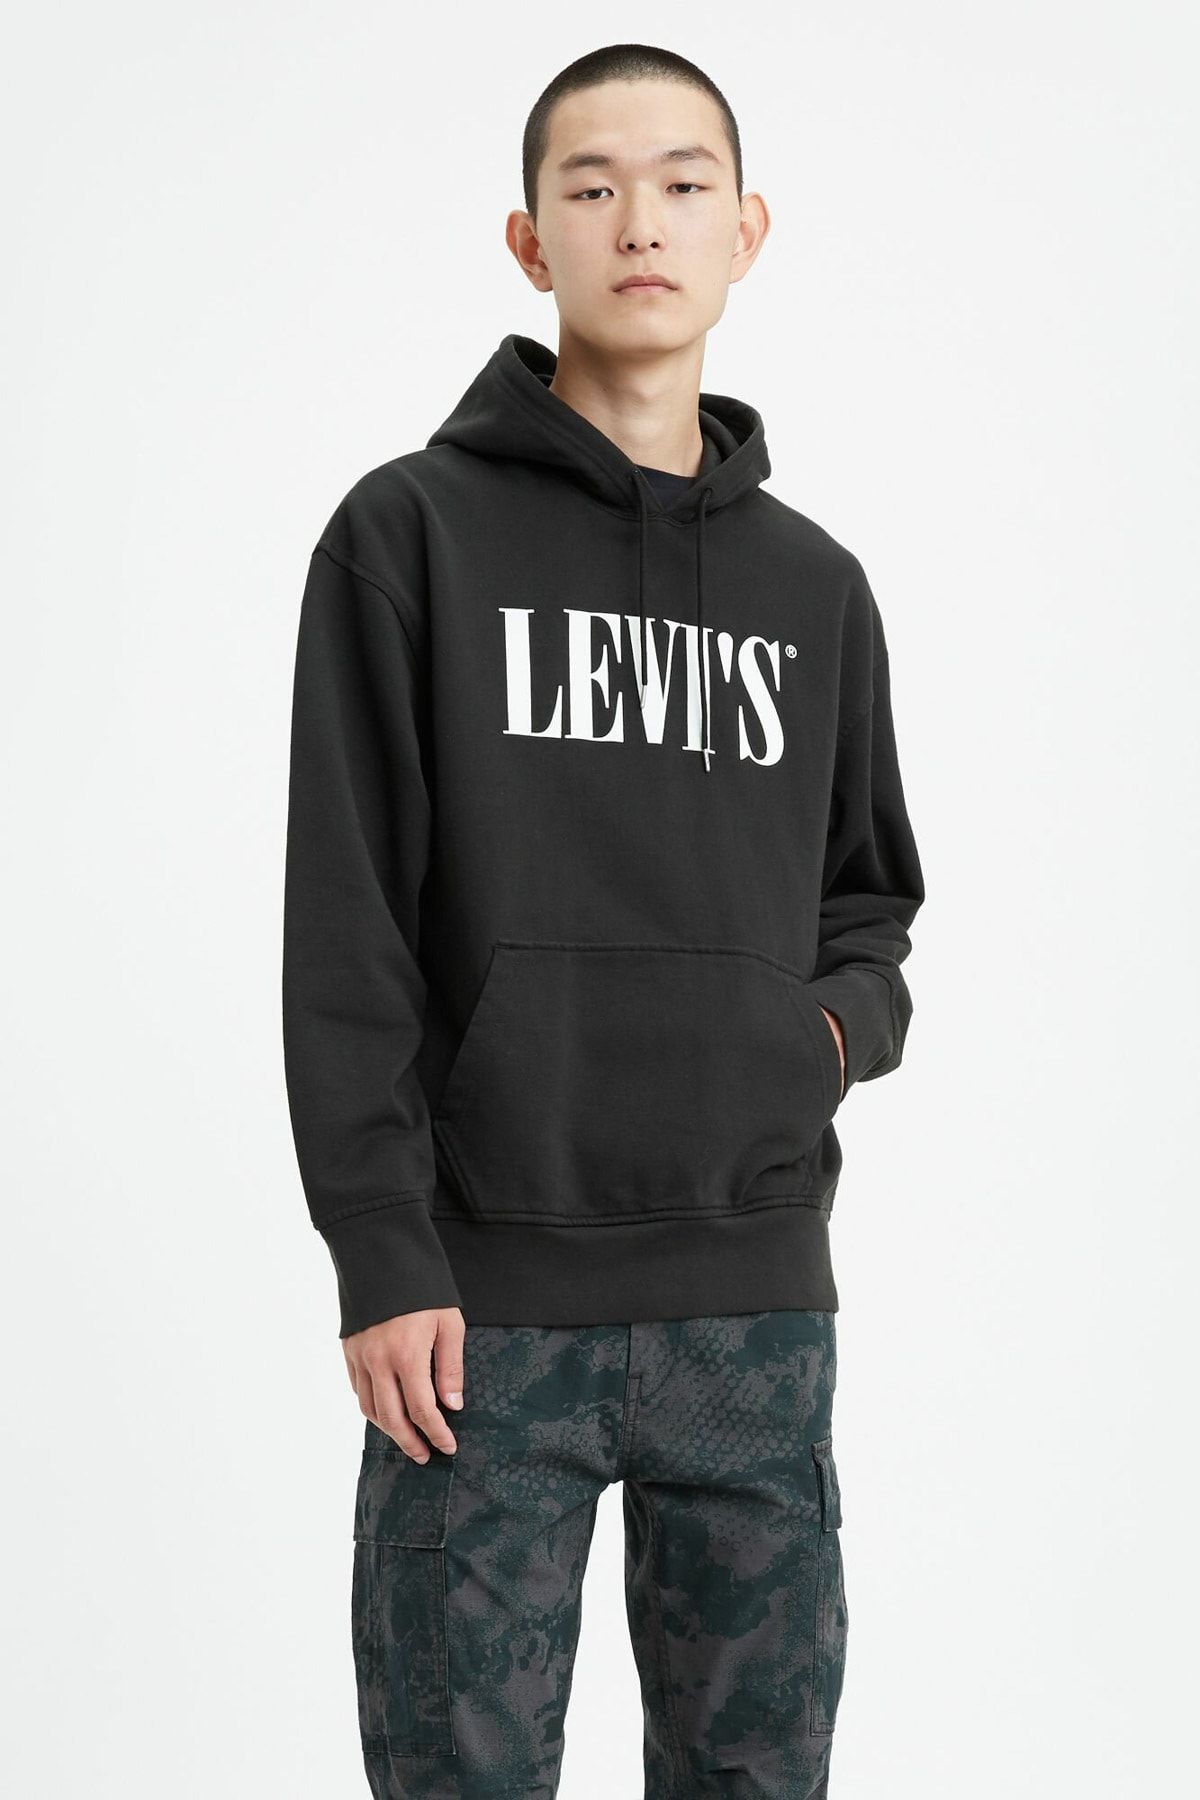 Levi's Erkek Relaxed Graphic Hoodie Sweatshirt 72632-0018 Fiyatı, Yorumları  - TRENDYOL